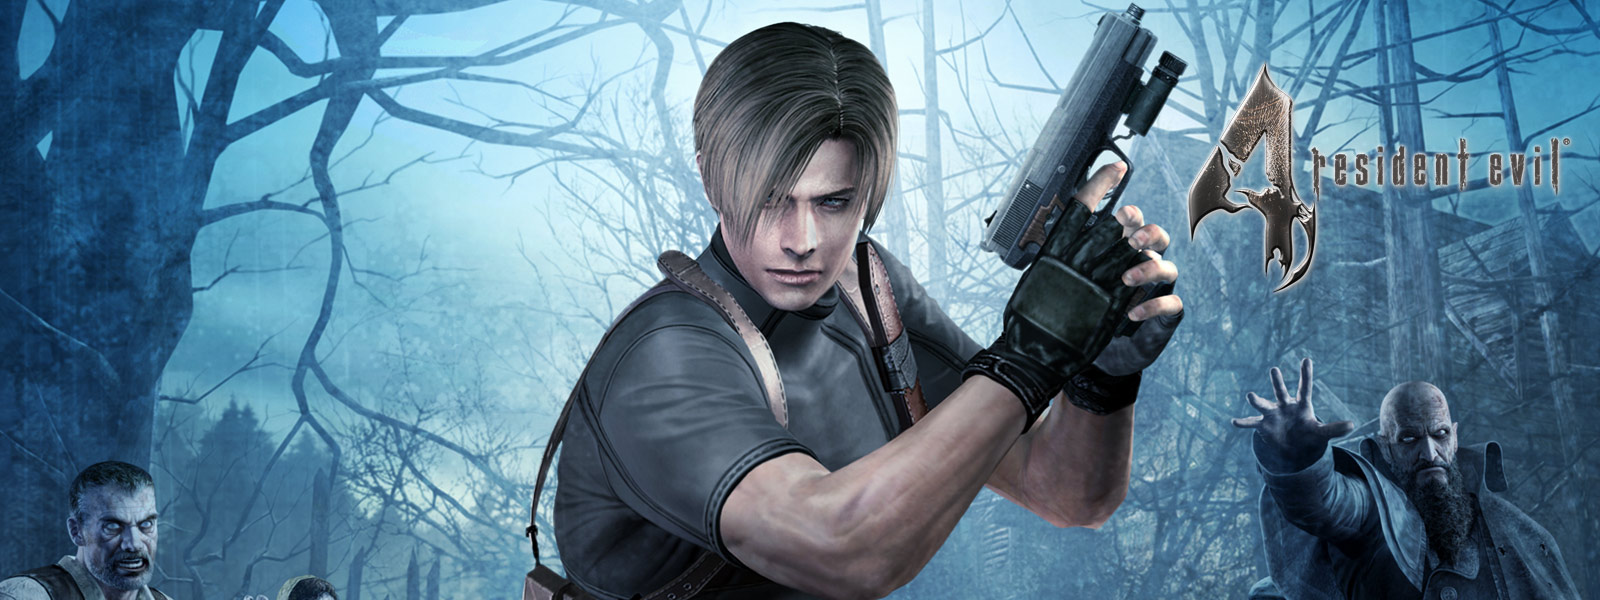 Resident Evil 4 – Charakter mit Pistole in einem dunklen Wald umgeben von Zombies